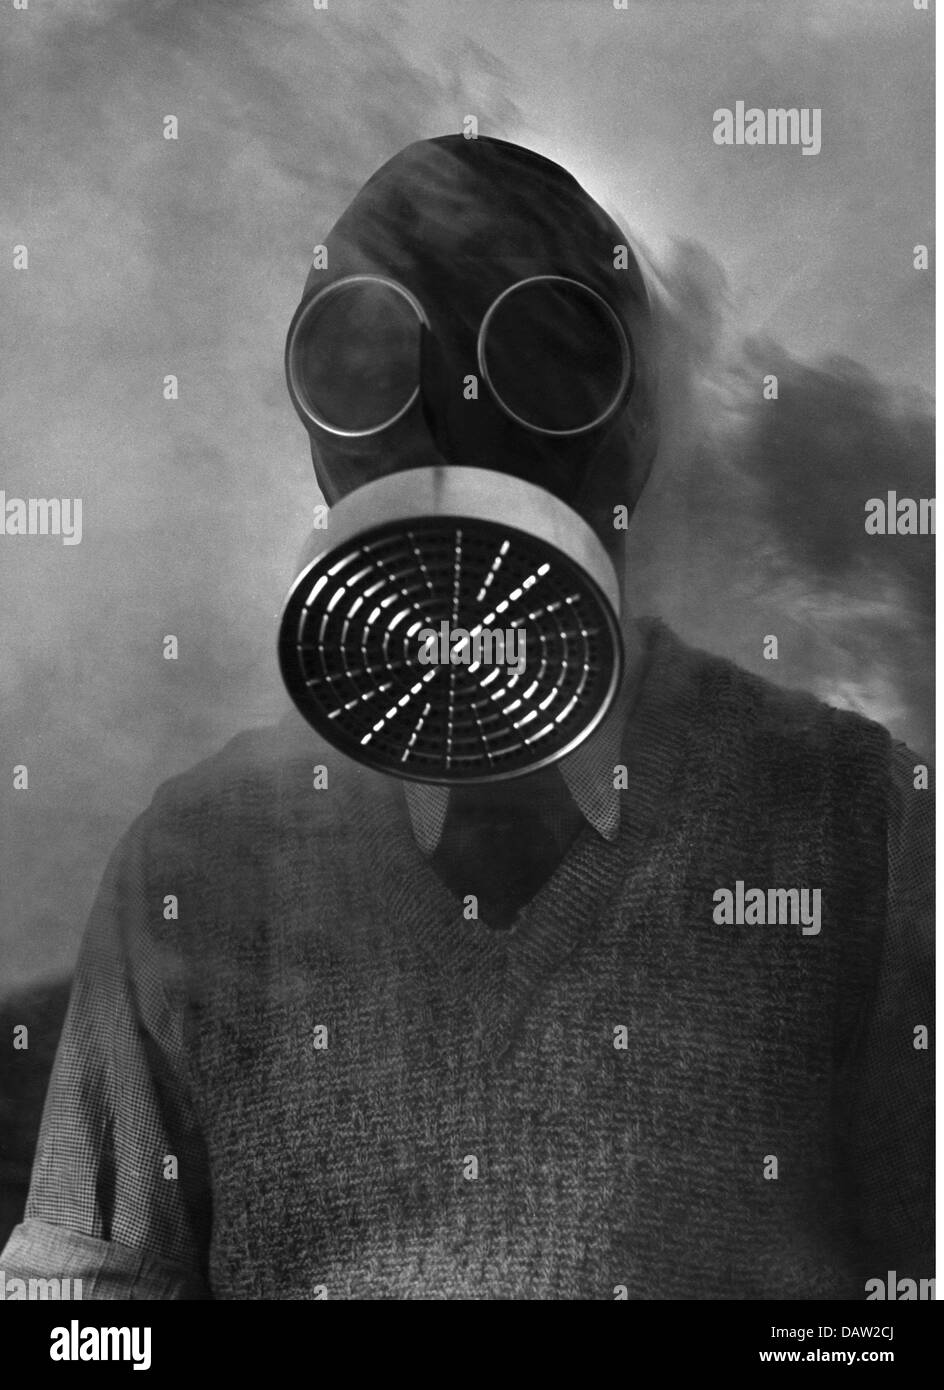 Segunda Guerra Mundial / Segunda Guerra Mundial, guerra aérea, Alemania, perforación de un ataque aéreo de una brigada de bomberos de fábrica, Berlín, alrededor de 1942, hombre con máscara de gas, Derechos adicionales-Clearences-no disponible Foto de stock